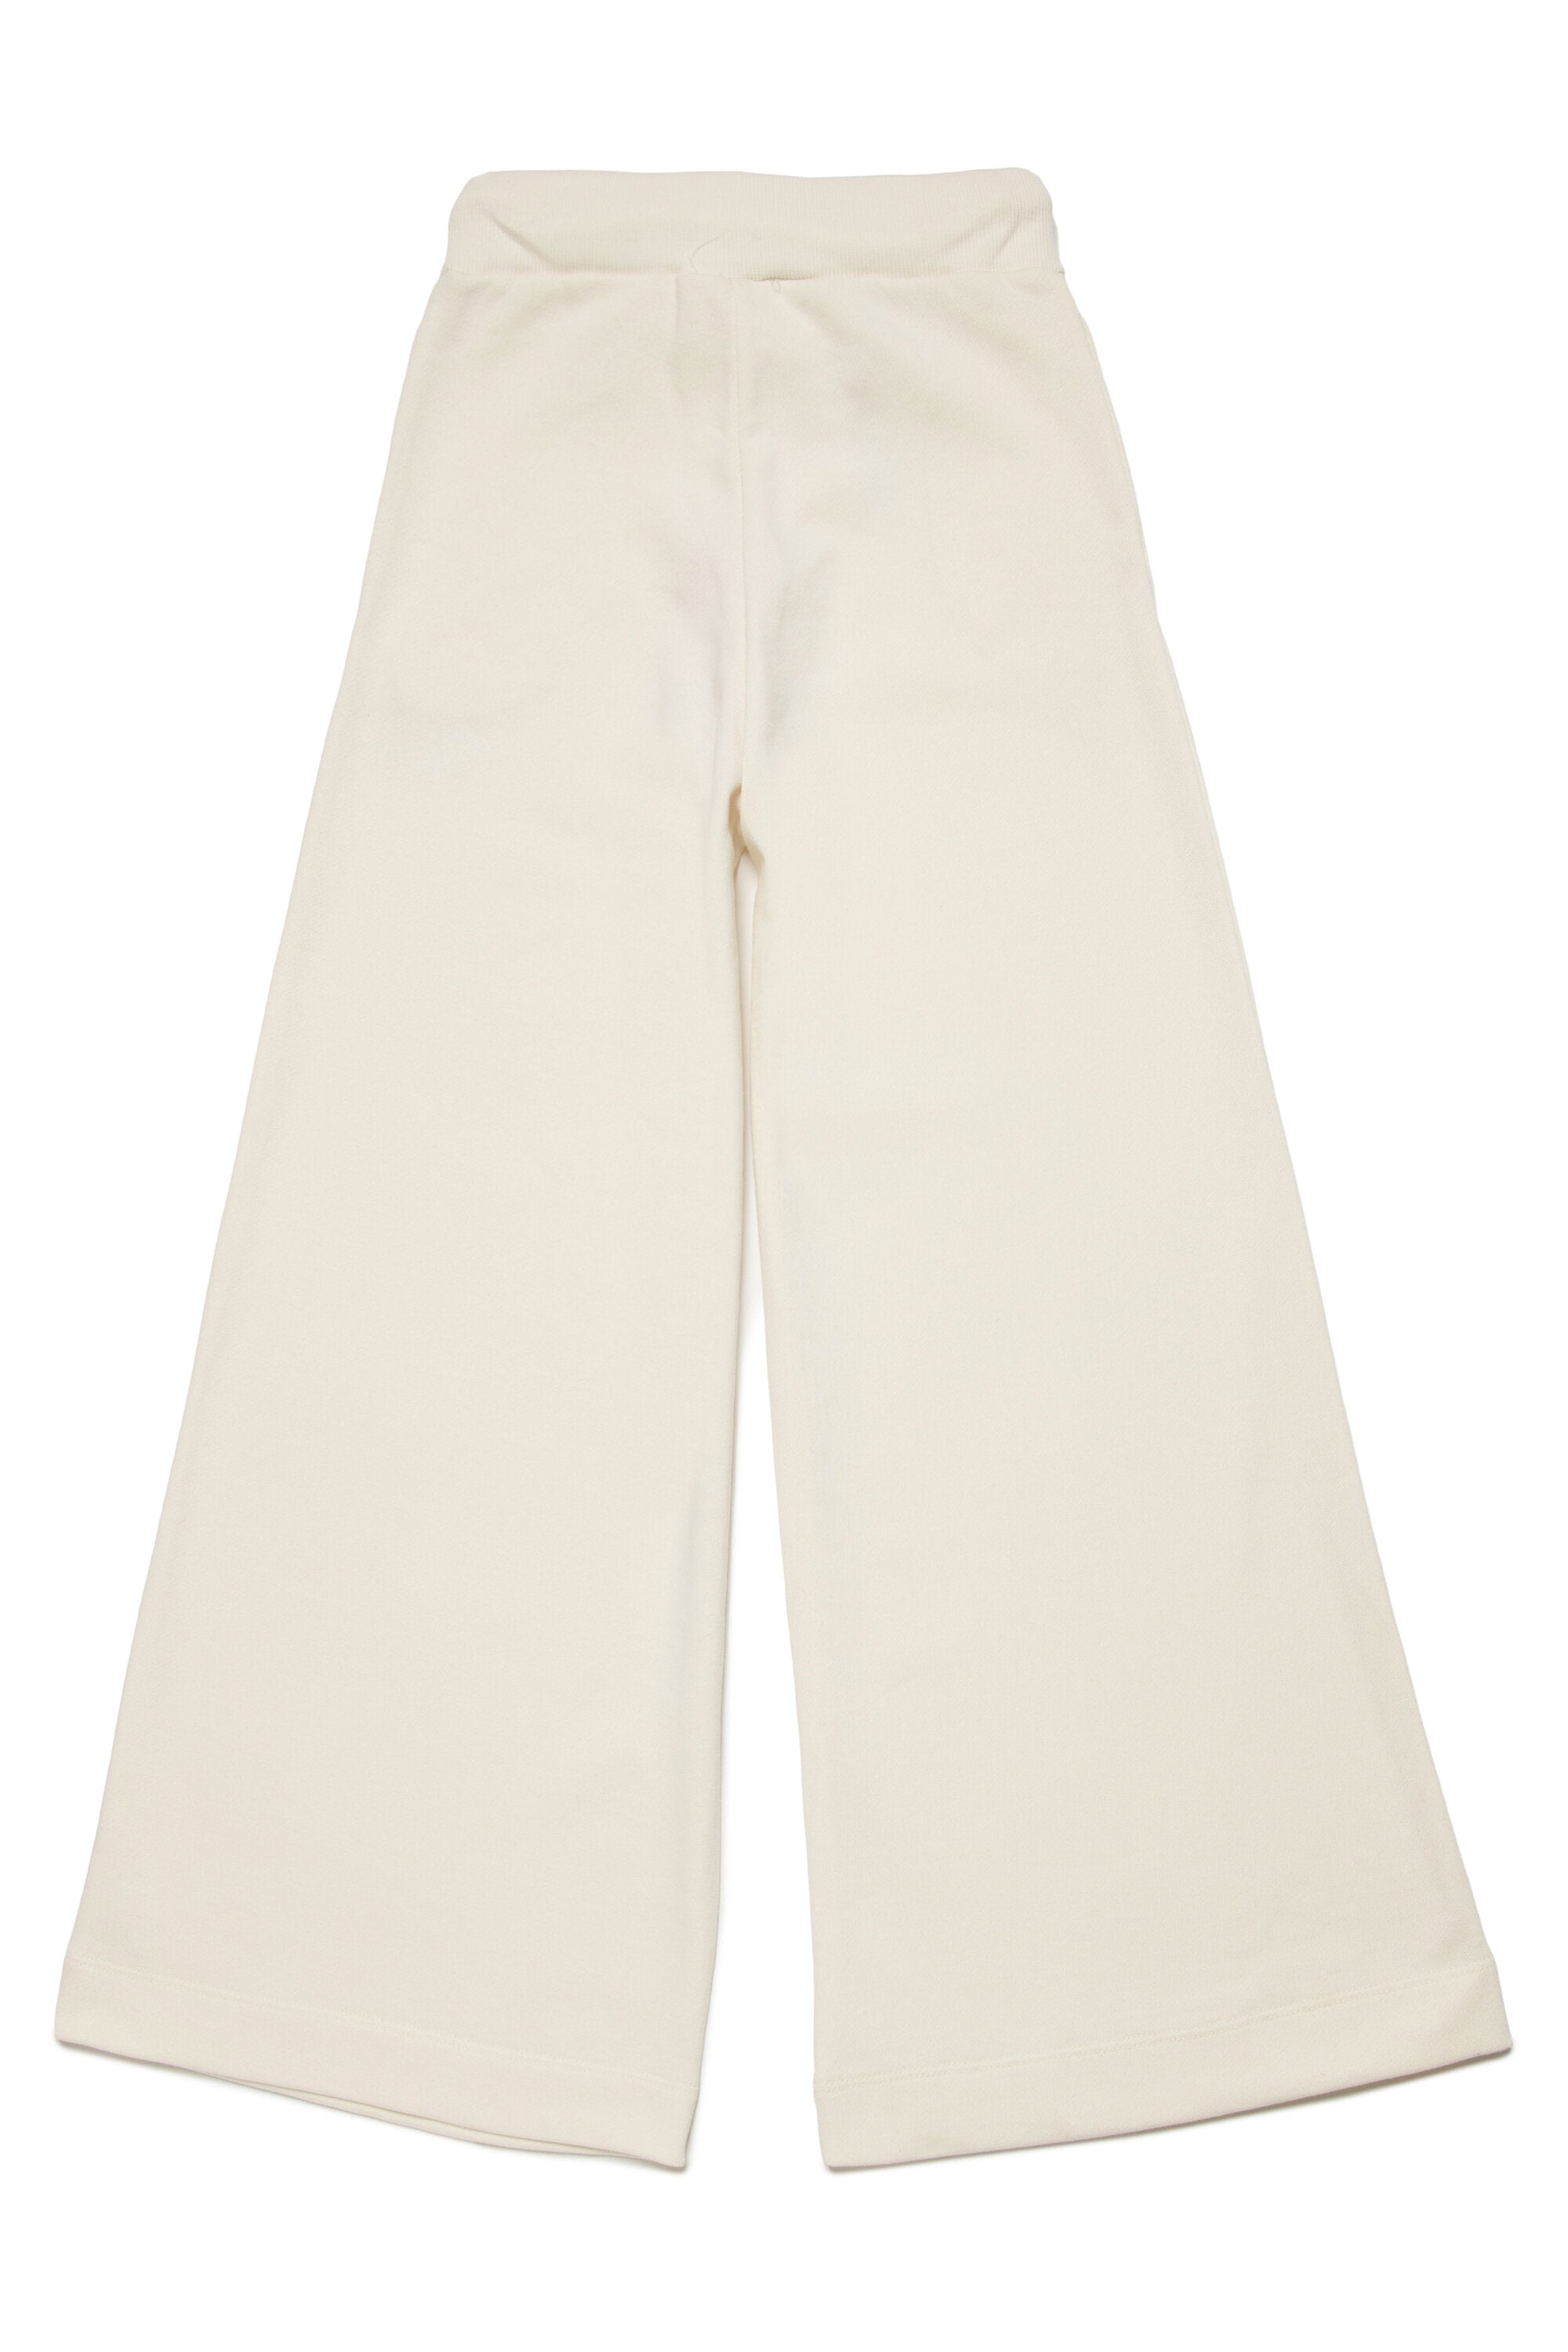 Pantalones de pernera ancha con estampado puffy en chándal